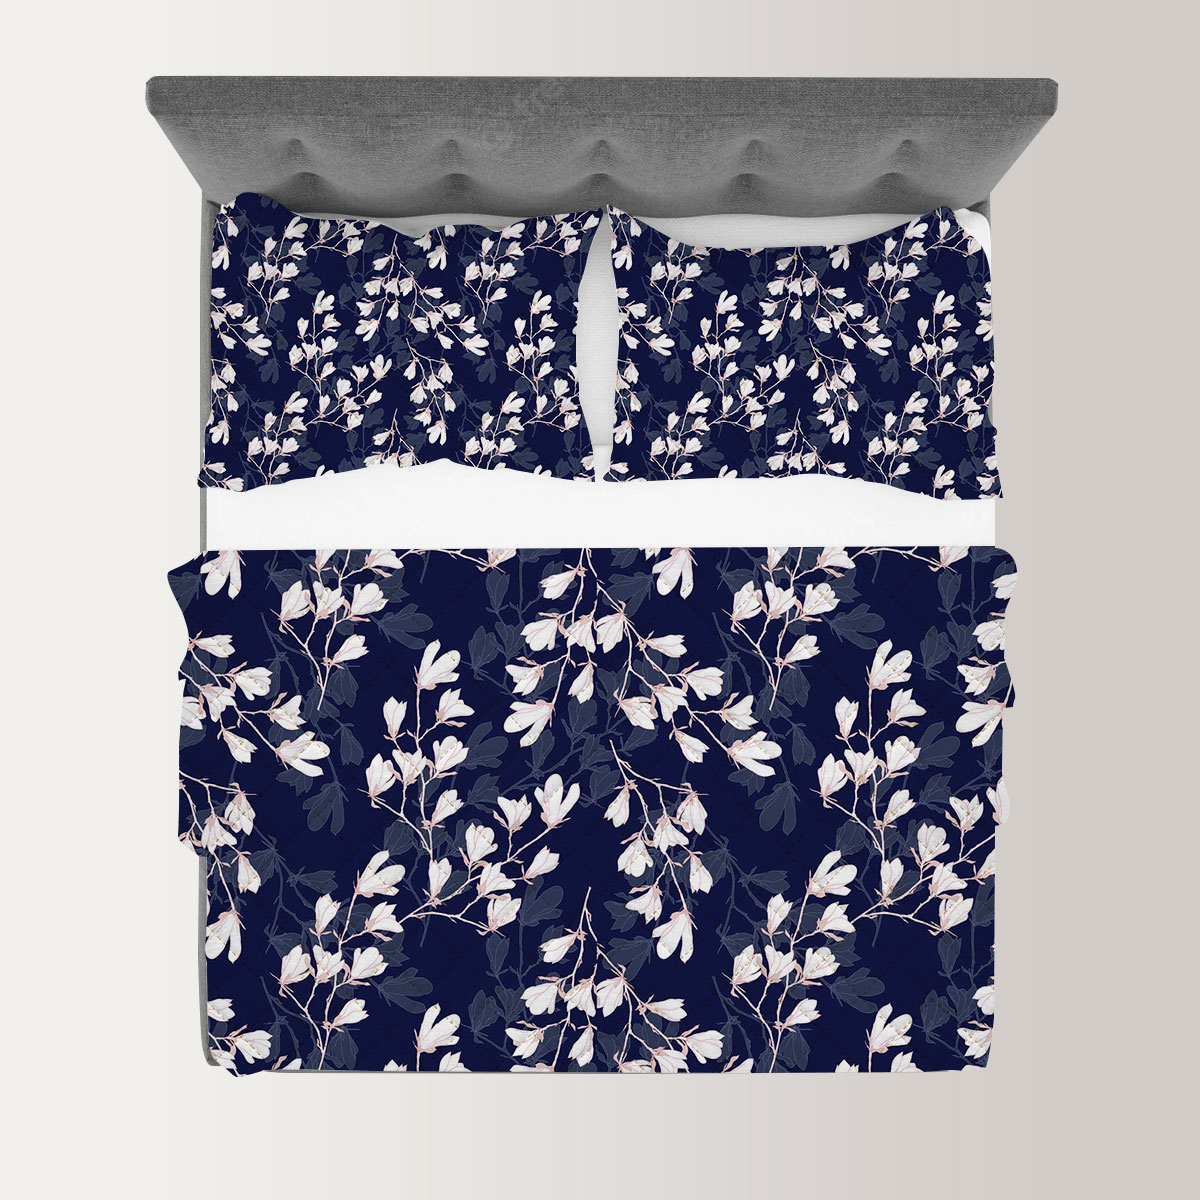 White Magnolia Flower On Dark Blue Background Quilt Set